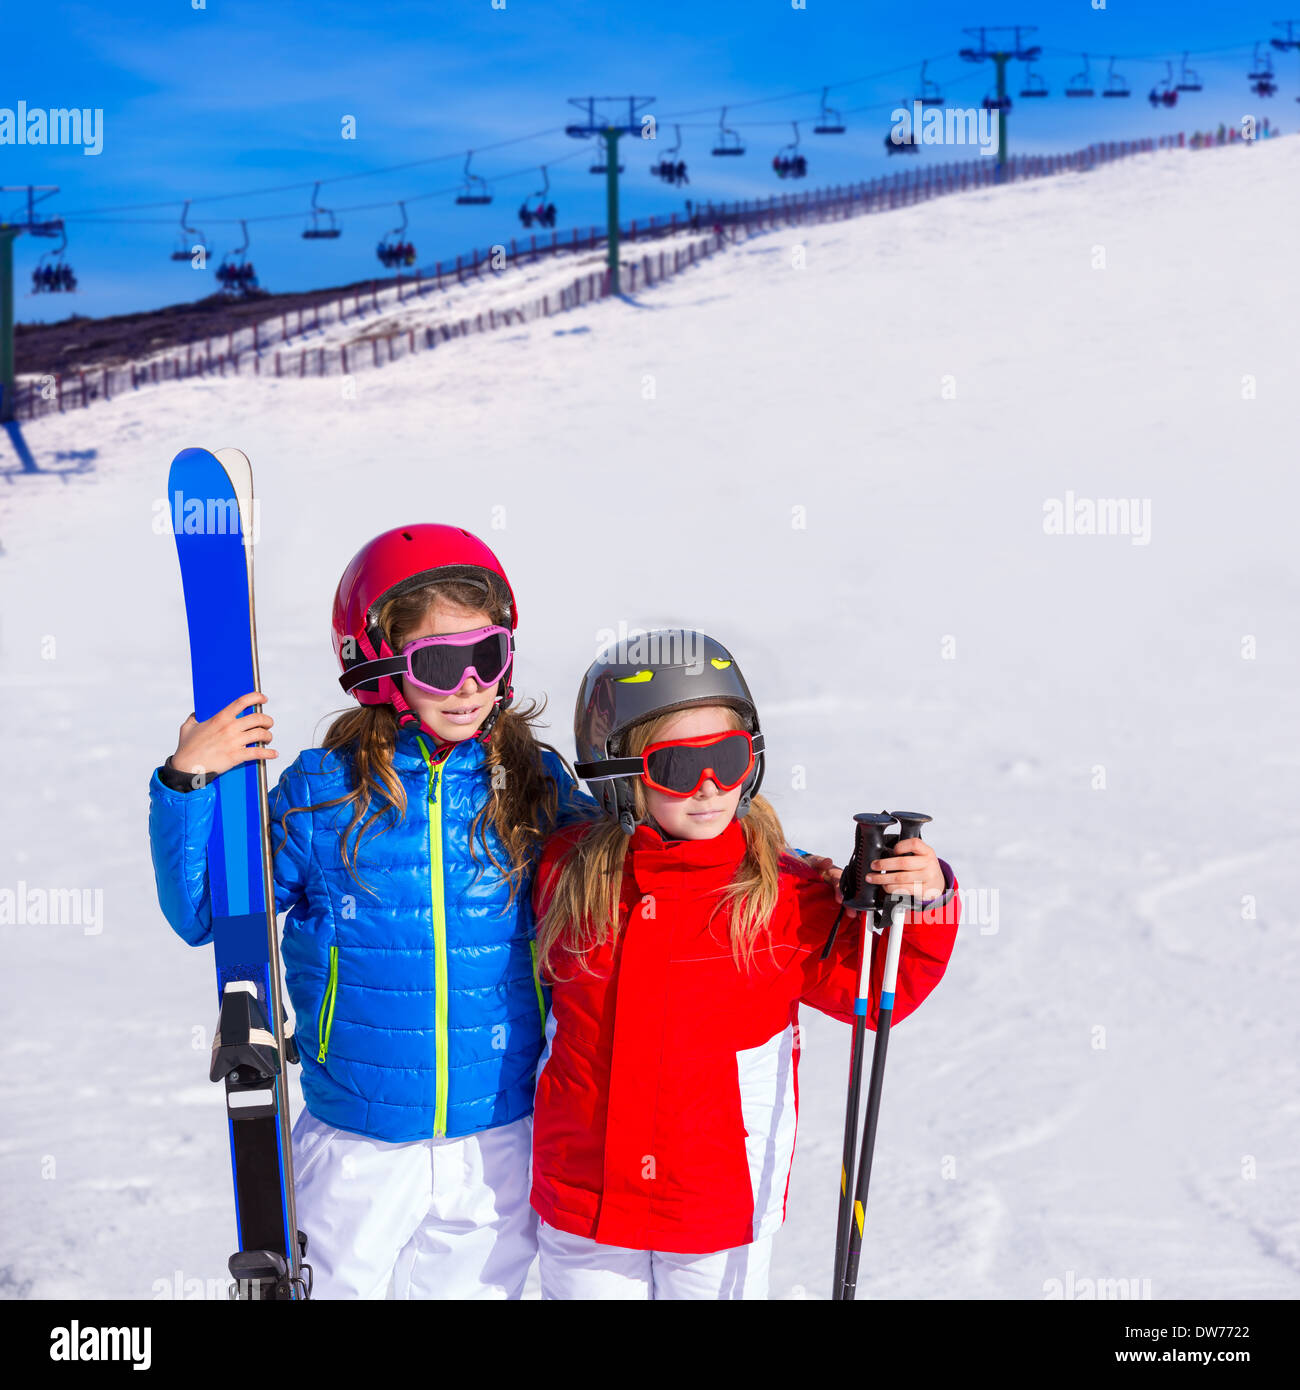 Gafas de esquí para niños Gafas de nieve Gafas de nieve Gafas de snowboard  para niños Niños Niñas